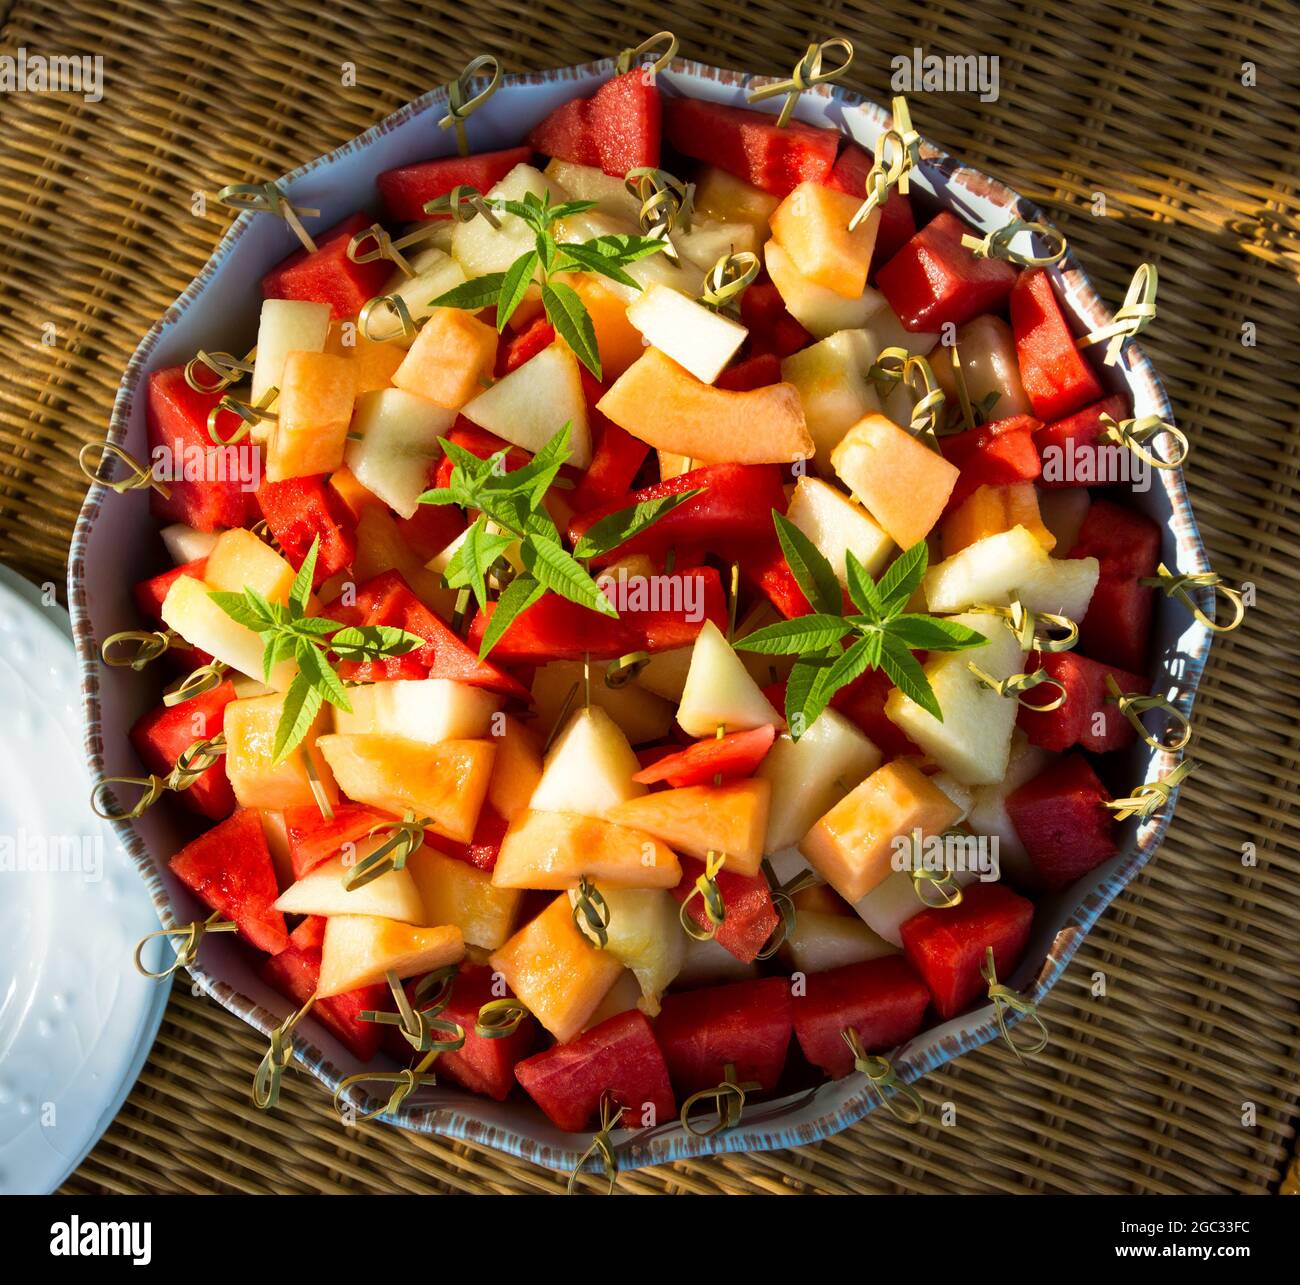 Große Schüssel mit frisch geschnittenem Obst, Melone, Wassermelone, auf Bambusstäbchen. Stockfoto